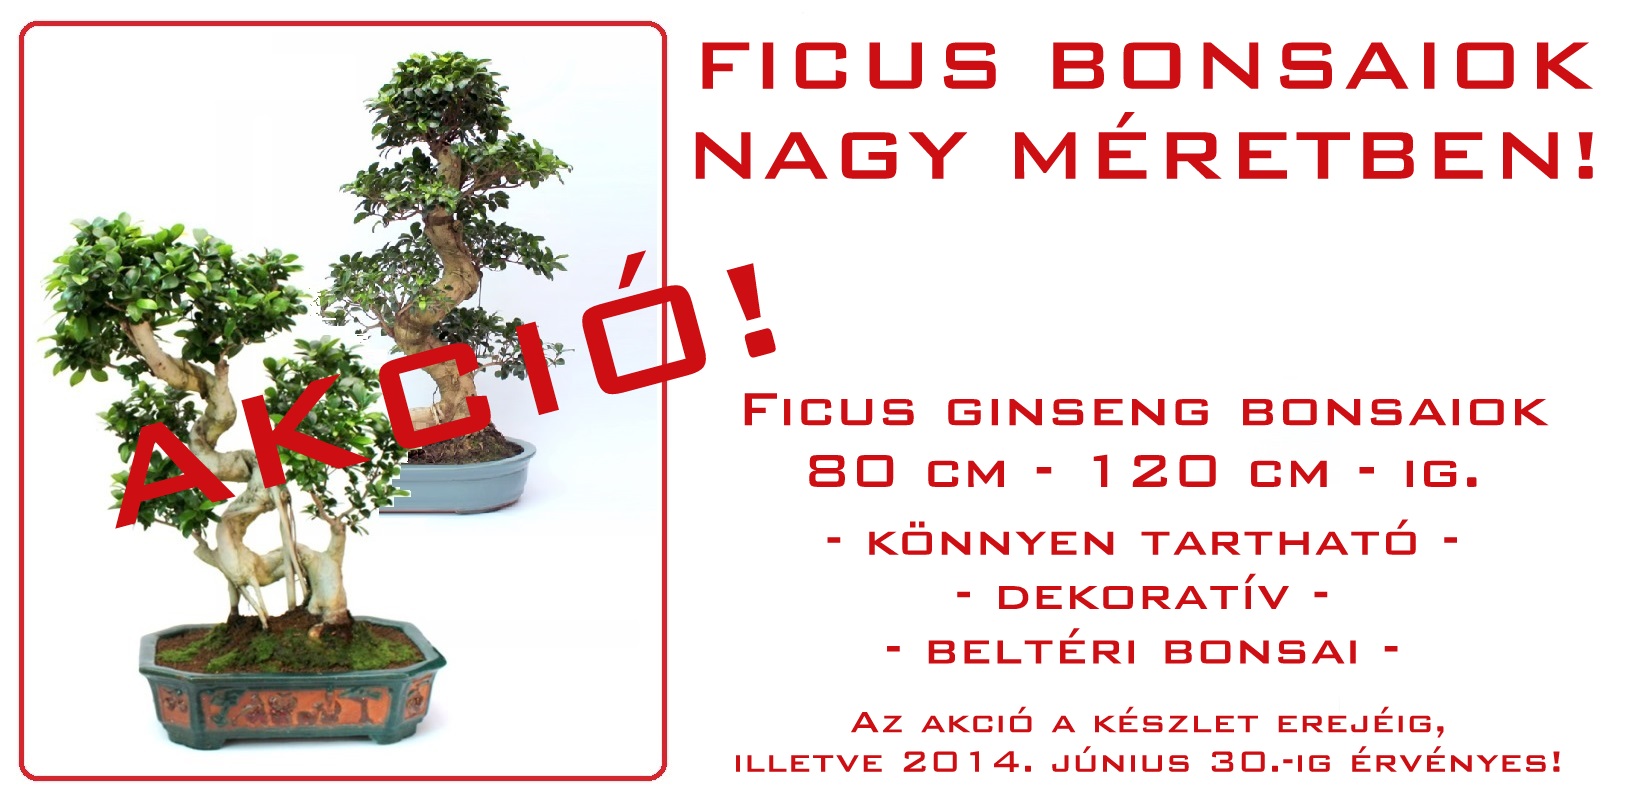 belteri bonsai szoba bonsai ficus ulmus carmona serissa es mas bonsaj fa kinalat rendelheto vasarlasi lehetoseg